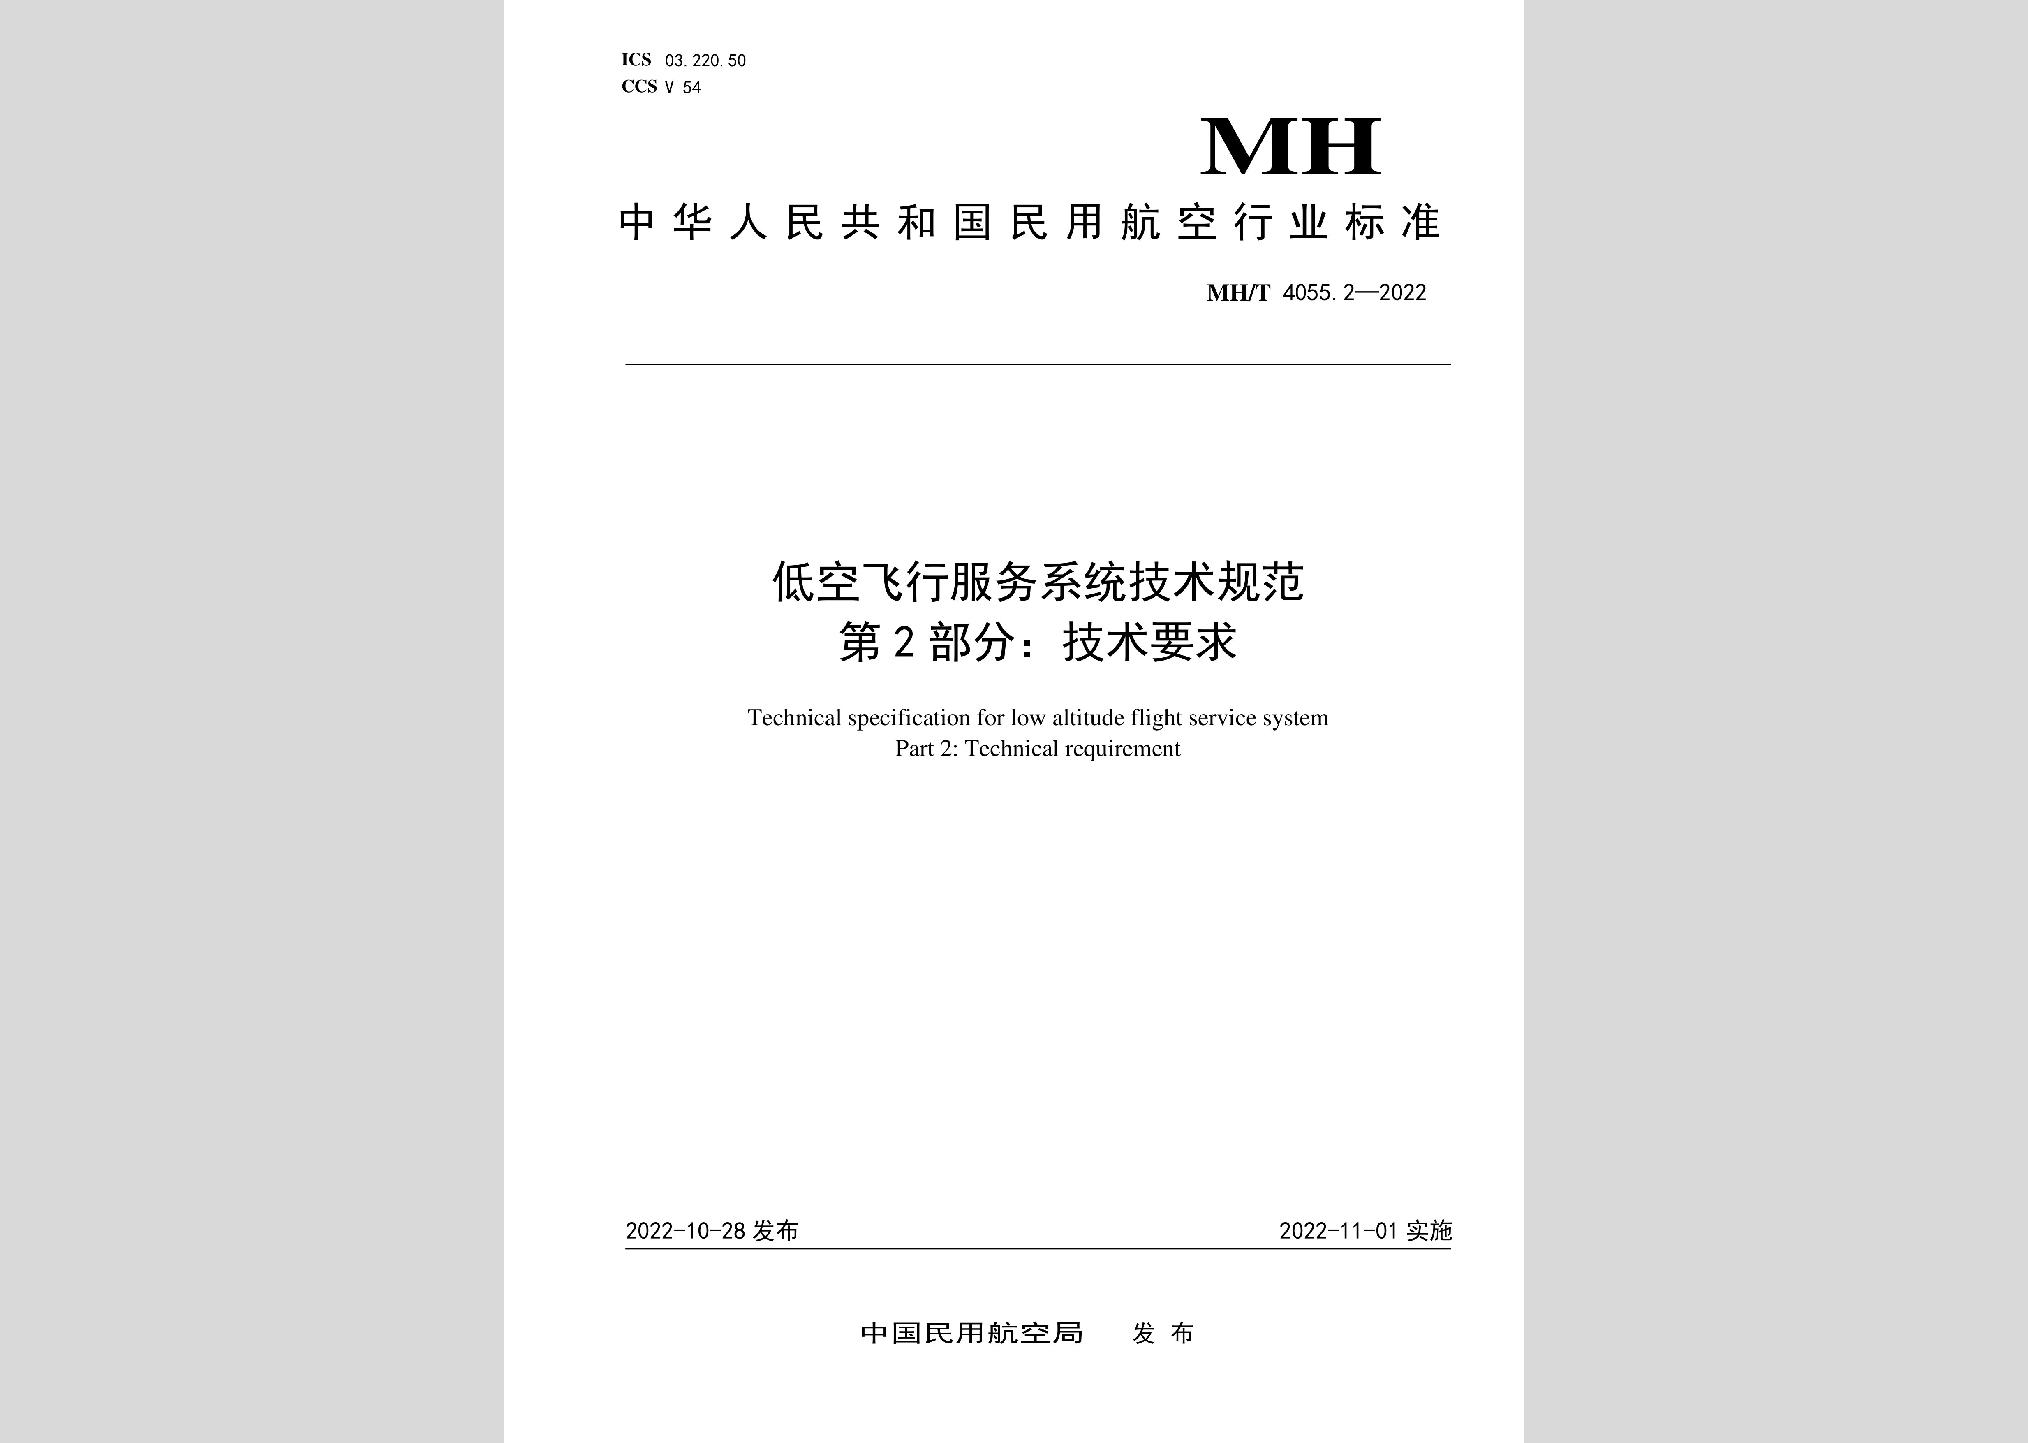 MH/T4055.2-2022：低空飞行服务系统技术规范第2部分：技术要求